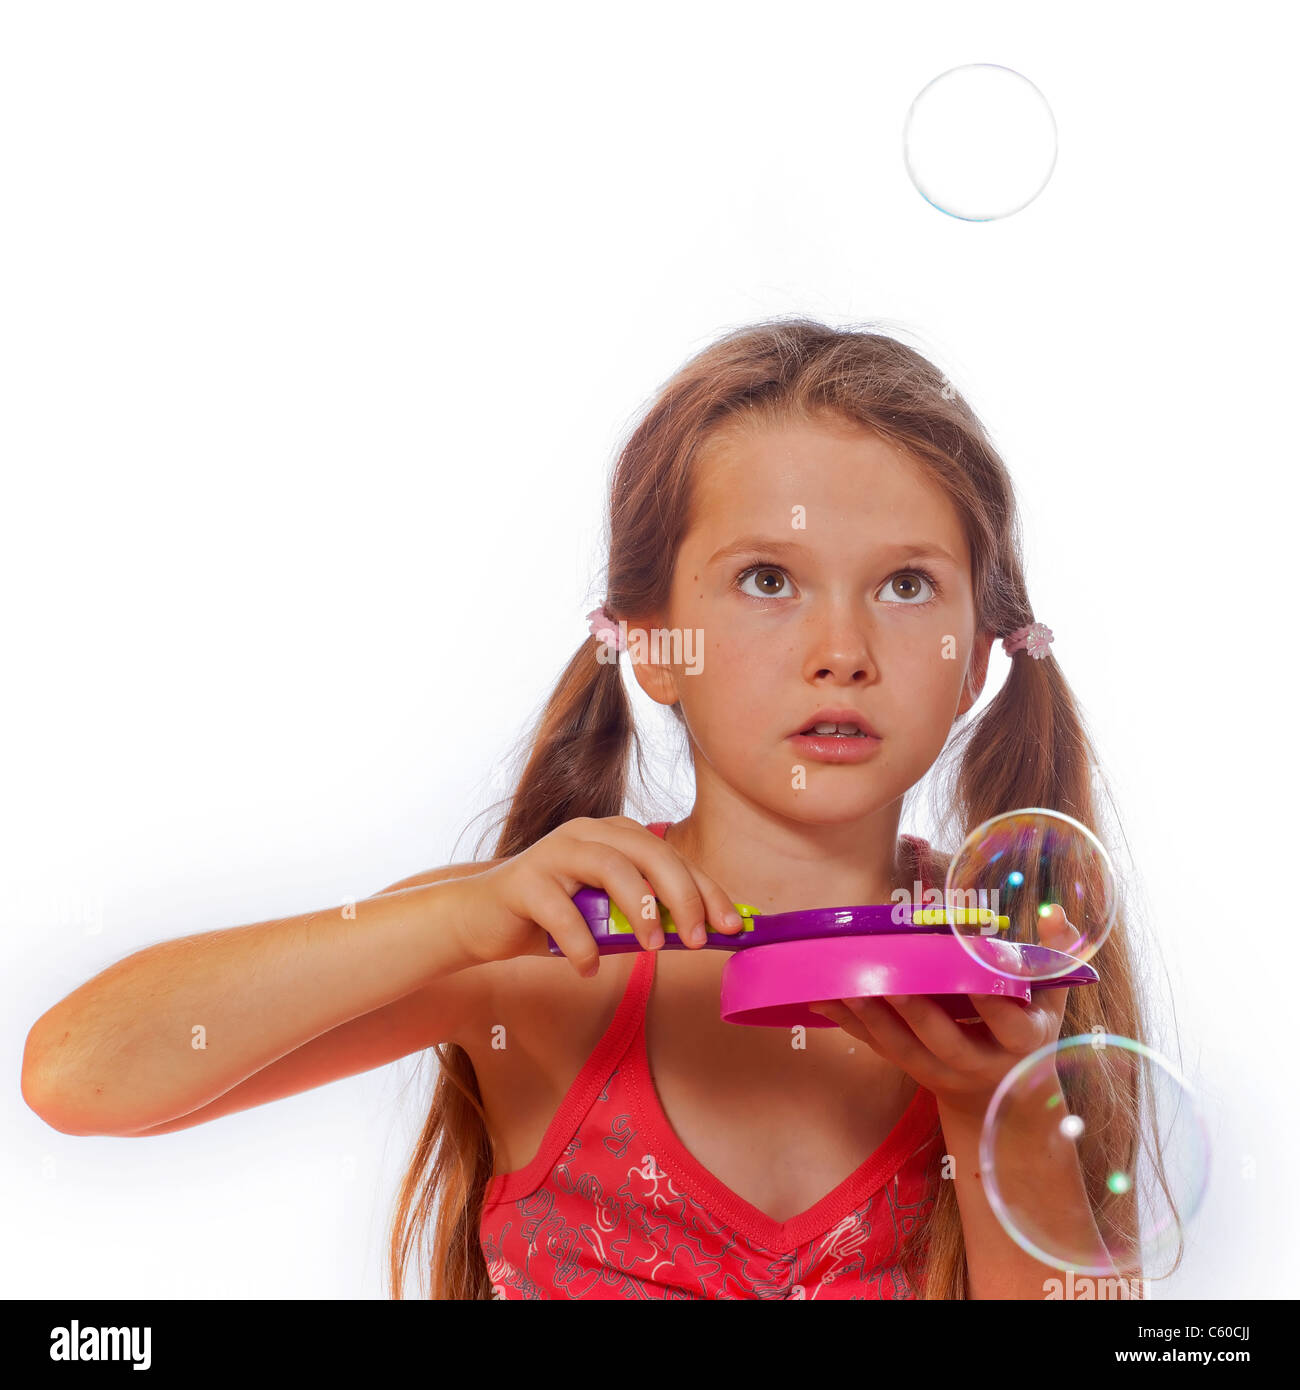 8 anno vecchia ragazza a giocare con le bolle di sapone Foto Stock